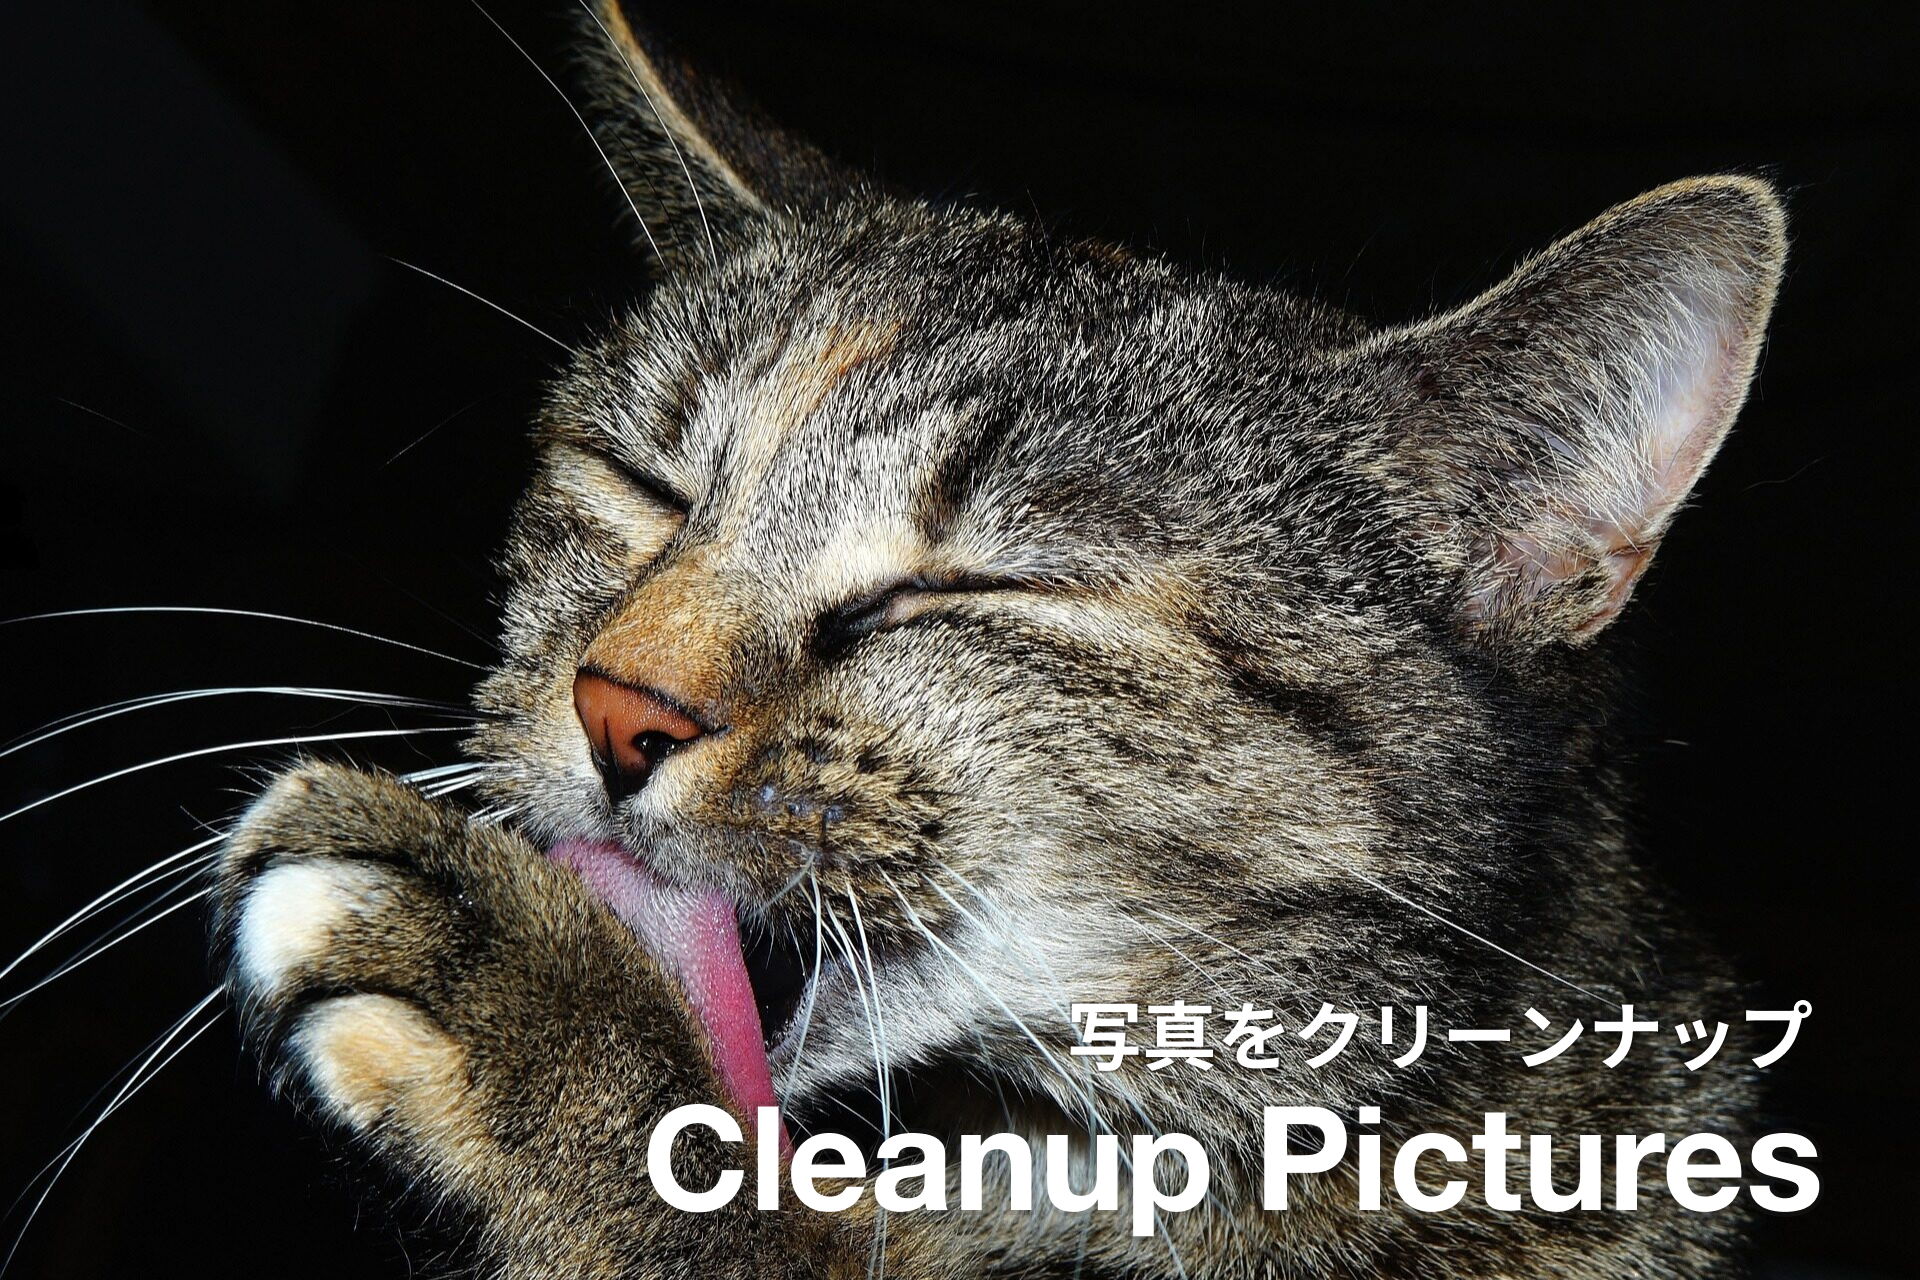 写真の一部を消すオンラインツール、Cleanup Pictures。